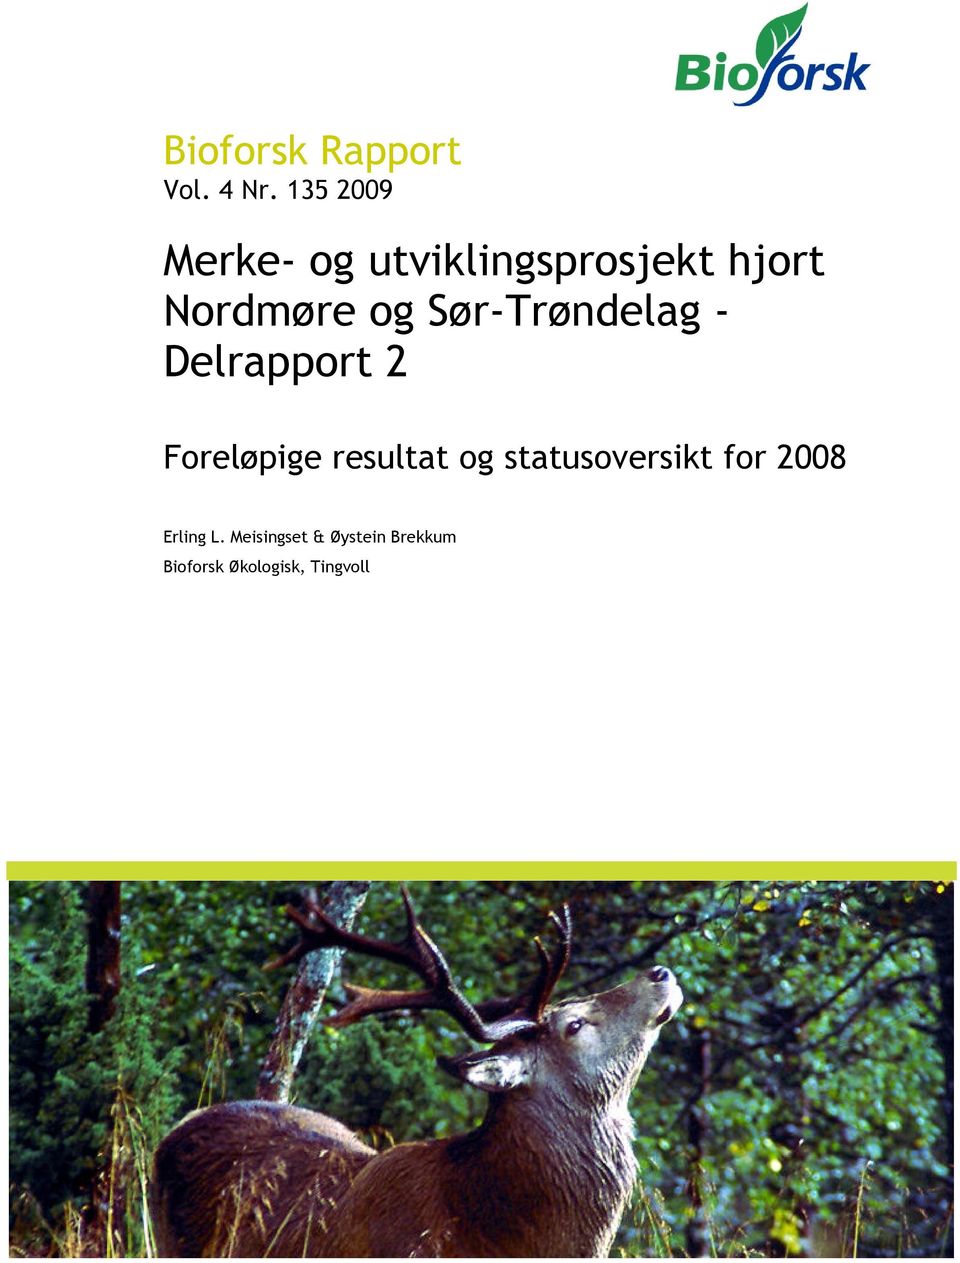 Sør-Trøndelag - Delrapport 2 Foreløpige resultat og